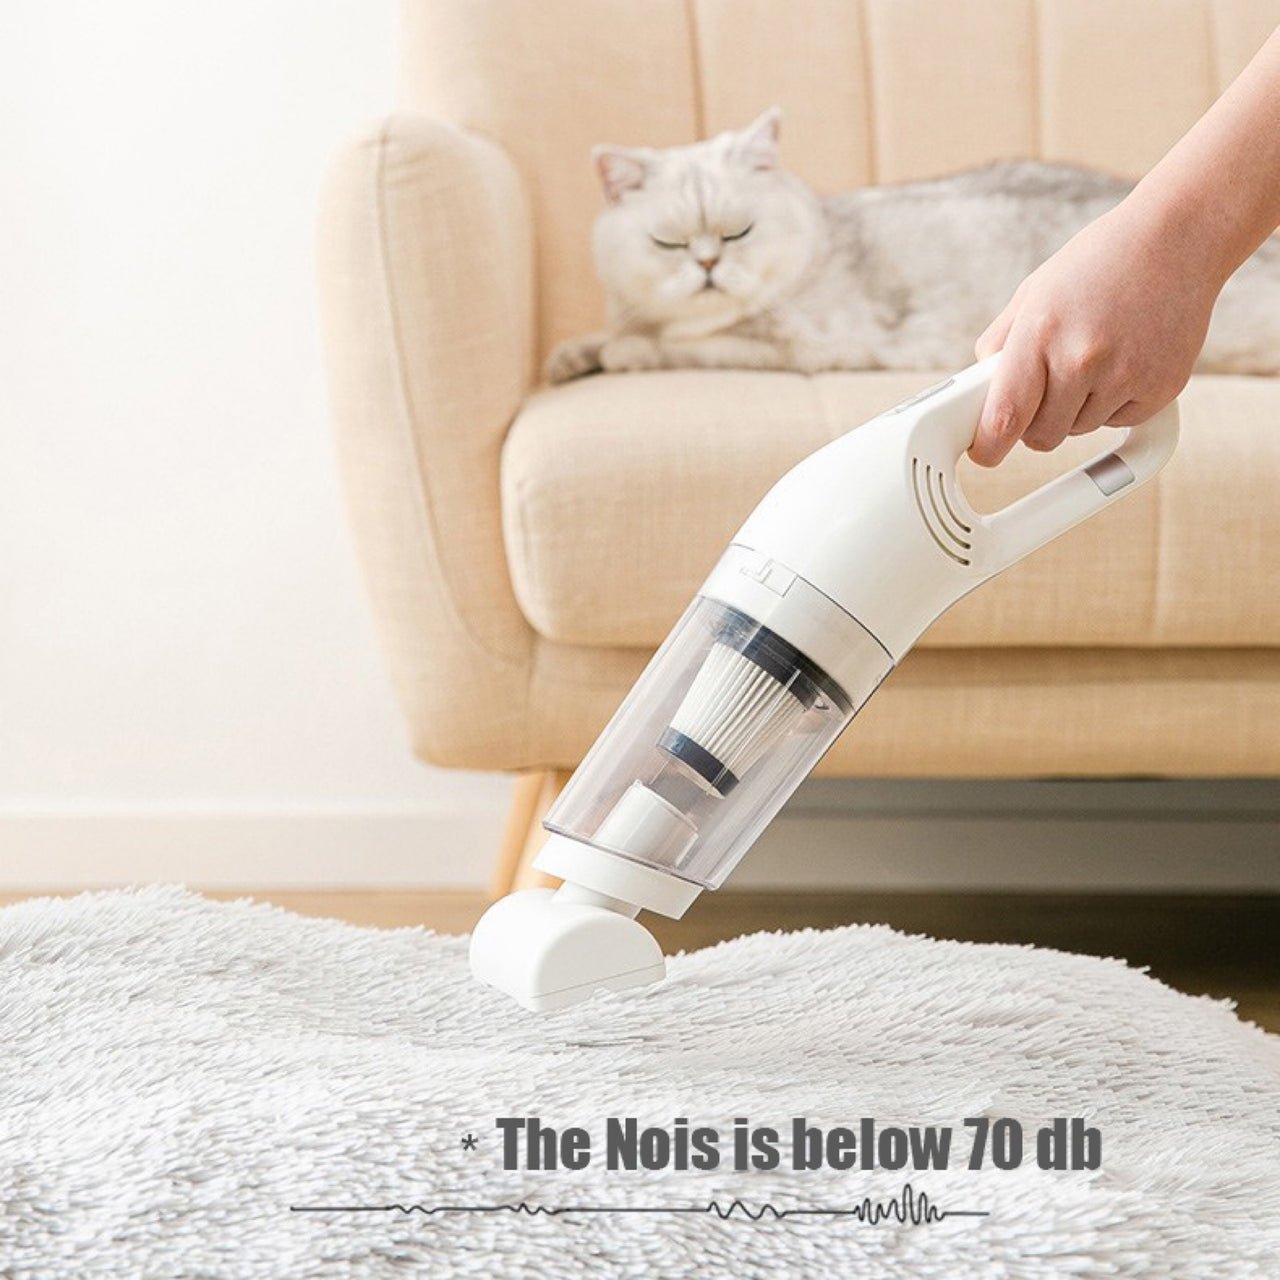 (HOT SALE NOW 49% OFF) - Pet Hair Grooming Vacuum